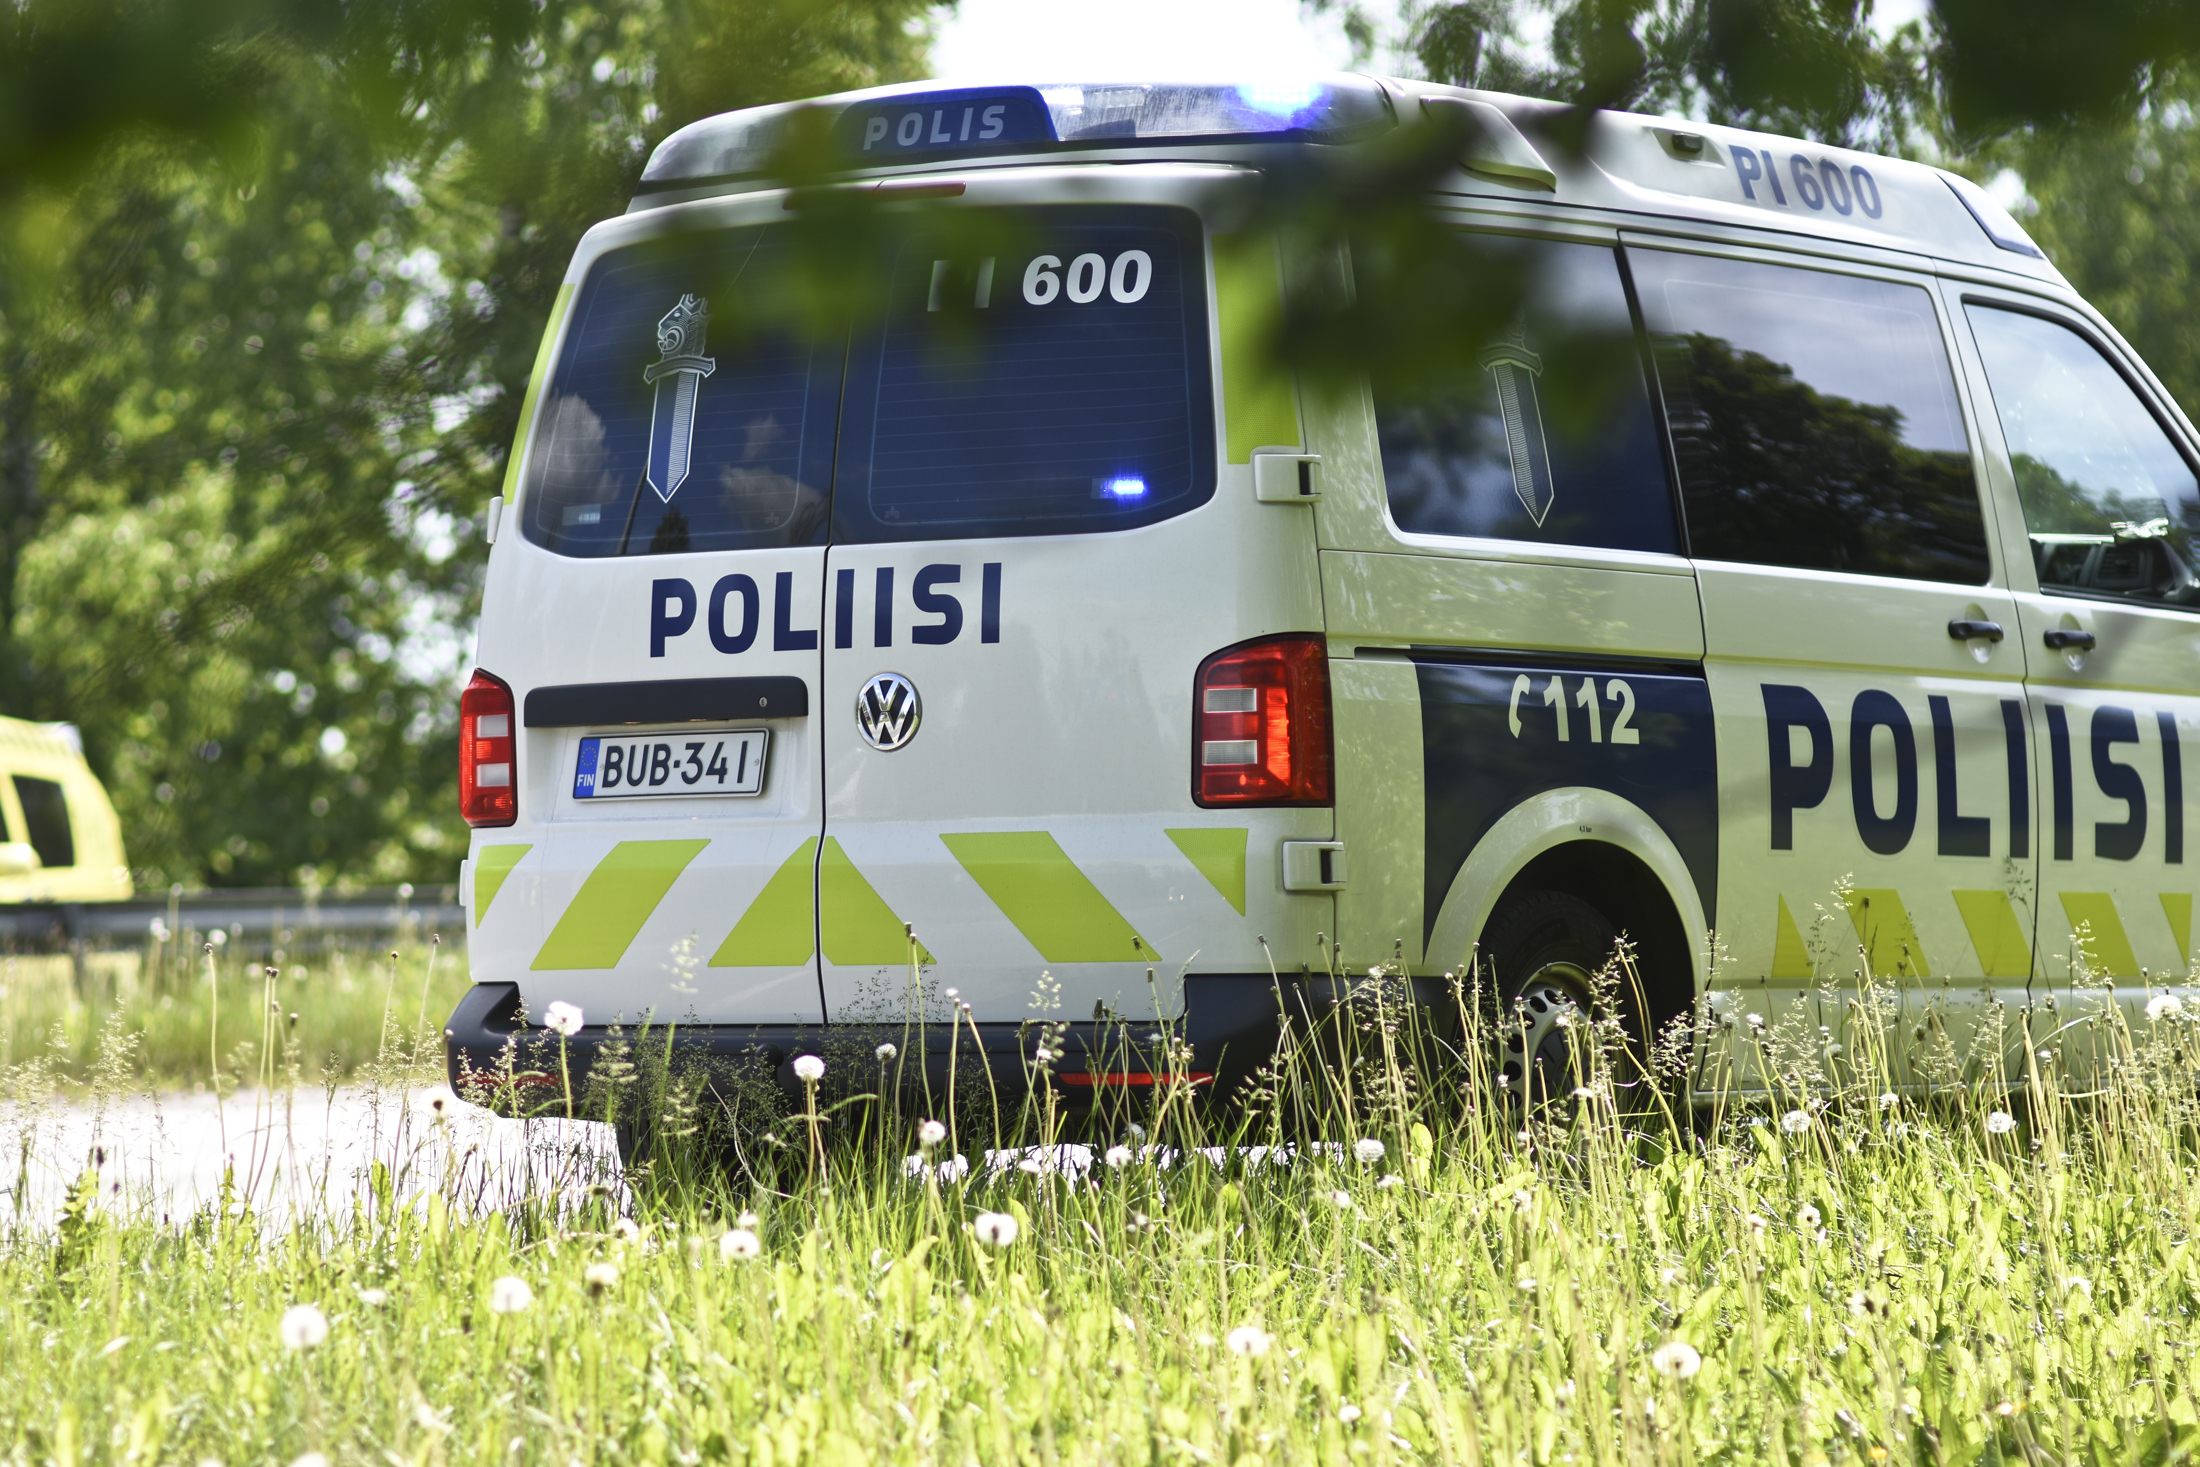 Poliisi Kuopion tapahtumien jälkeen: ”Yhteiskunnassamme on nykyään paljon  aiempaa enemmän poikkeavasti käyttäytyviä ihmisiä” - Ylöjärven Uutiset